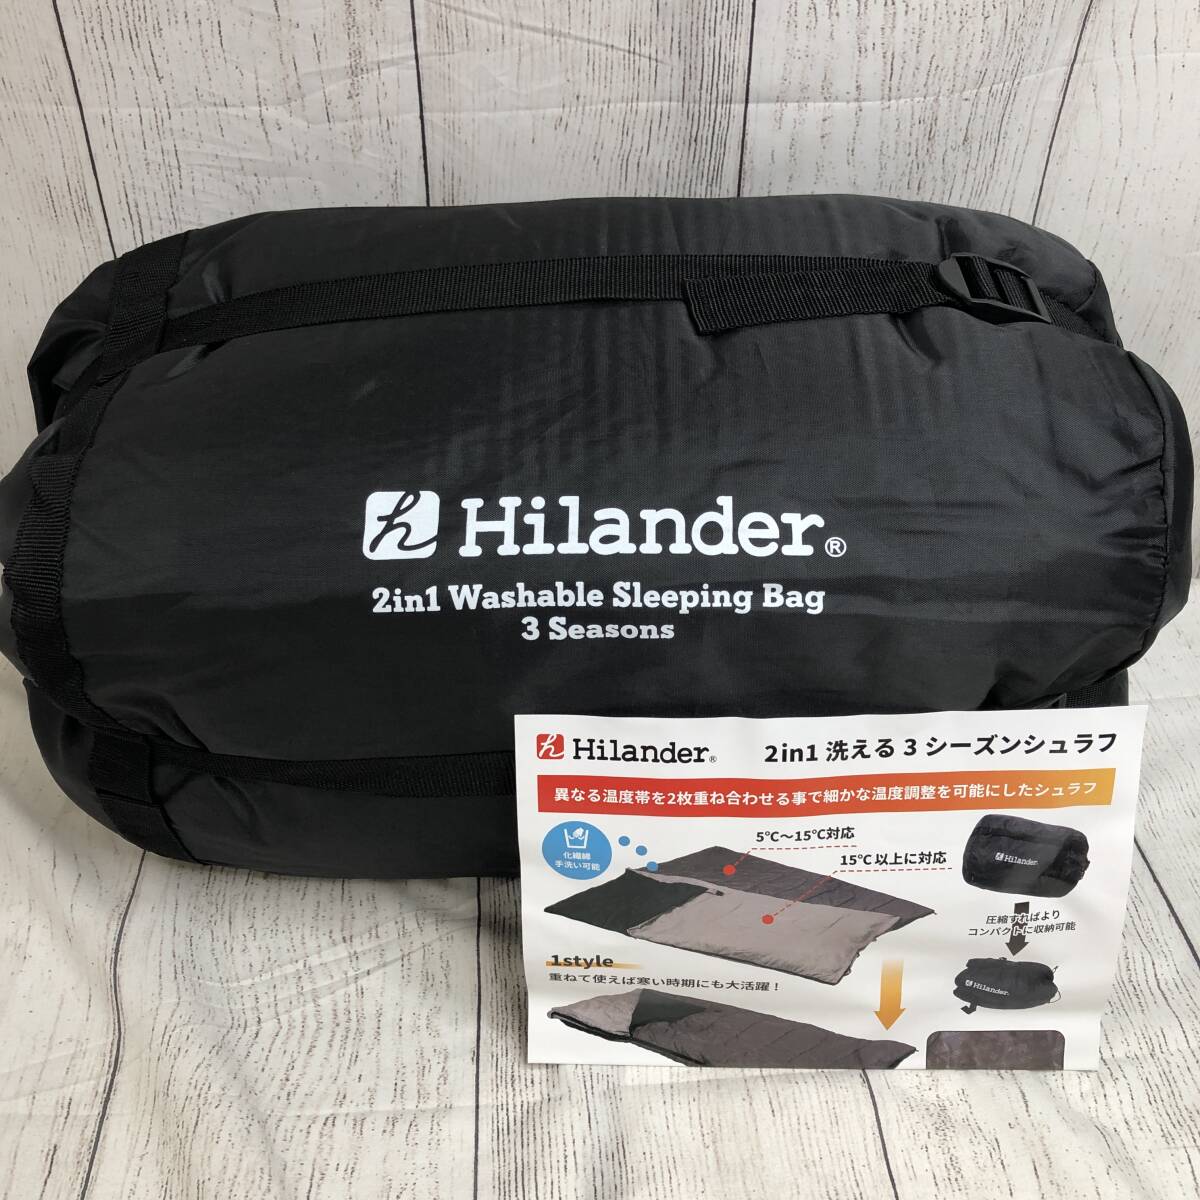 [ новый товар нераспечатанный ]Hilander( Highlander ) 2in1...3 season спальный мешок (5*C&15*C соответствует ) 3 season спальный мешок UK-7 /Y20904-K3